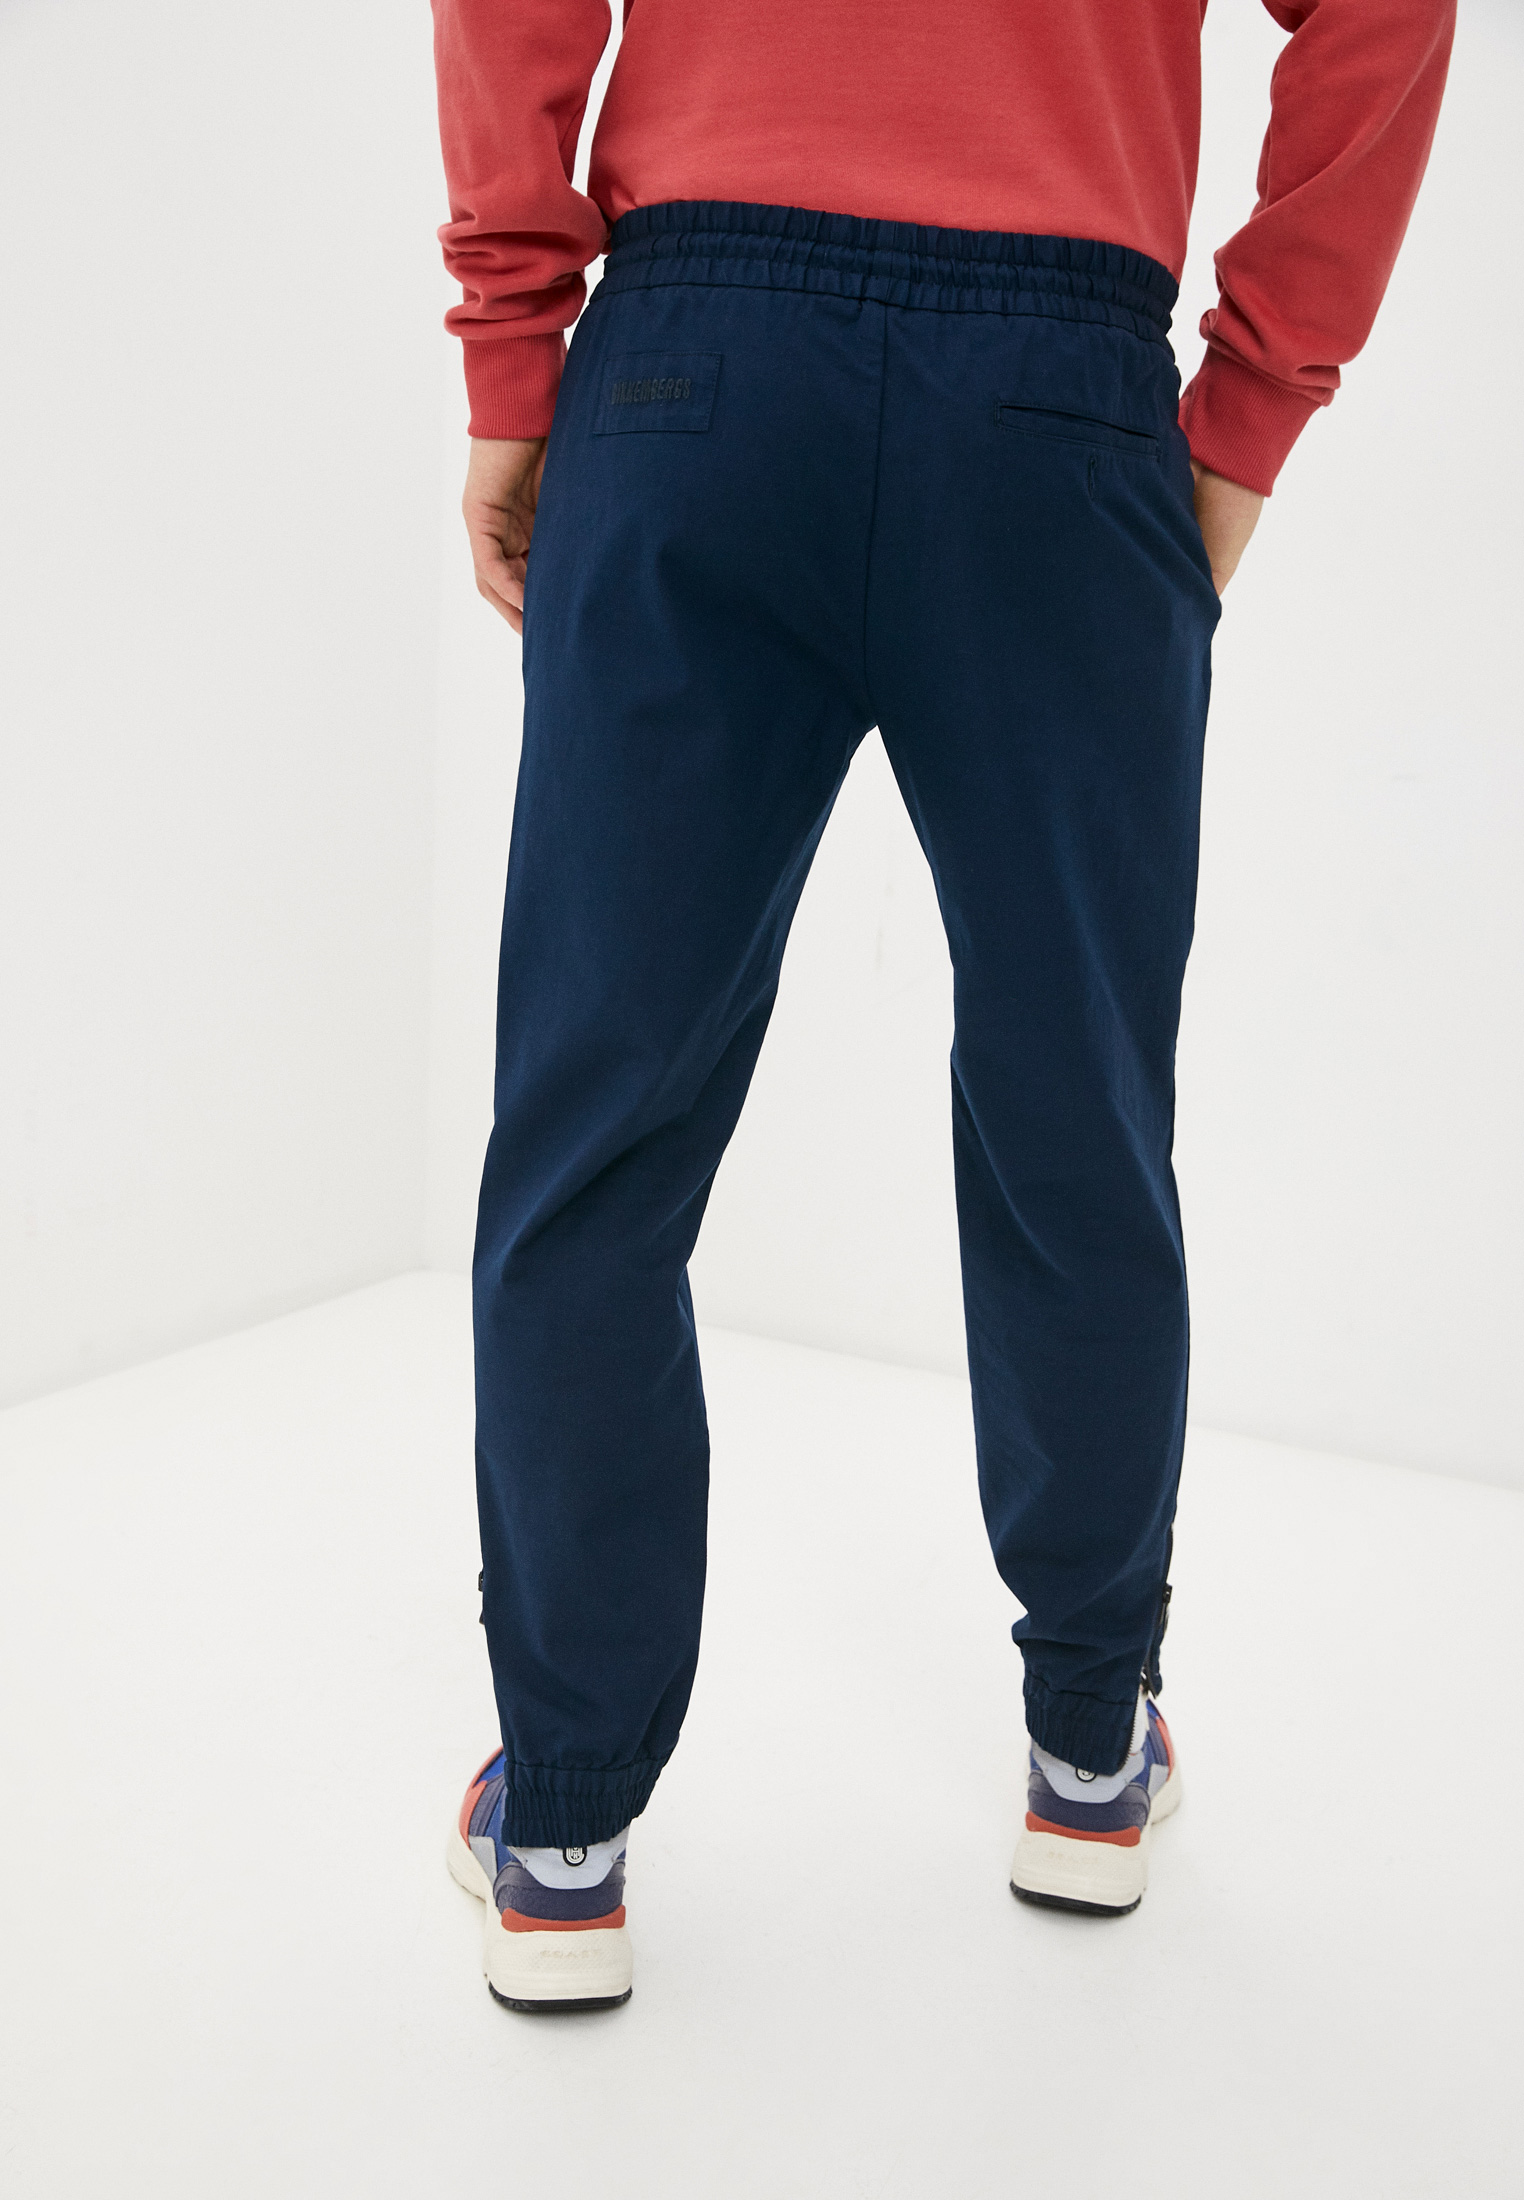 Мужские повседневные брюки Bikkembergs (Биккембергс) CP01201S3249Y91: изображение 4